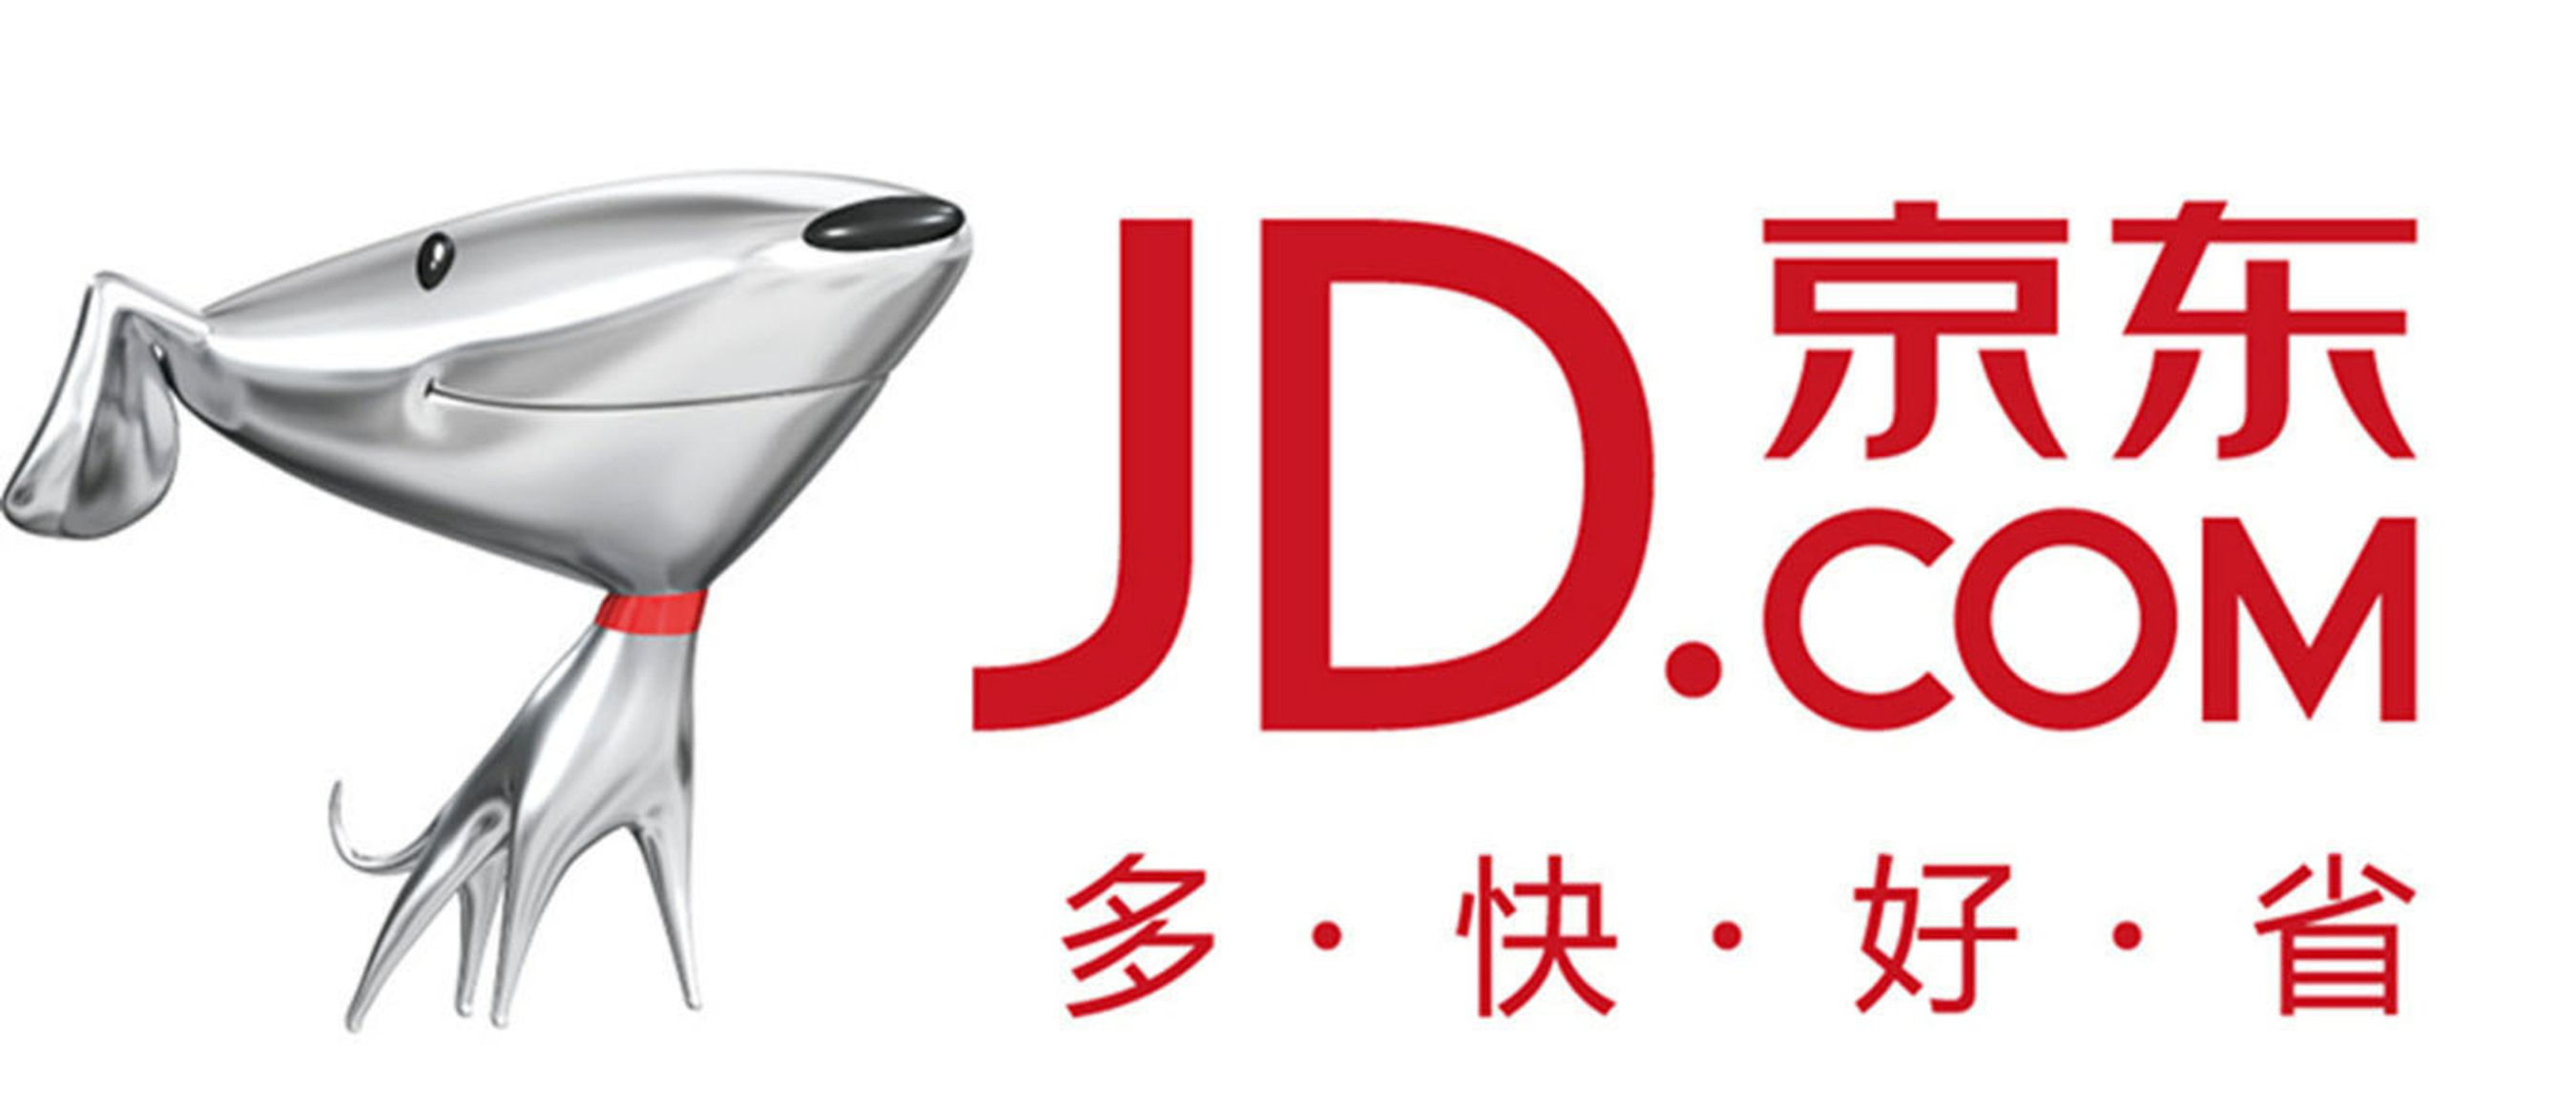 JD.com (Logo). (PRNewsFoto/Jingdong) (PRNewsFoto/)